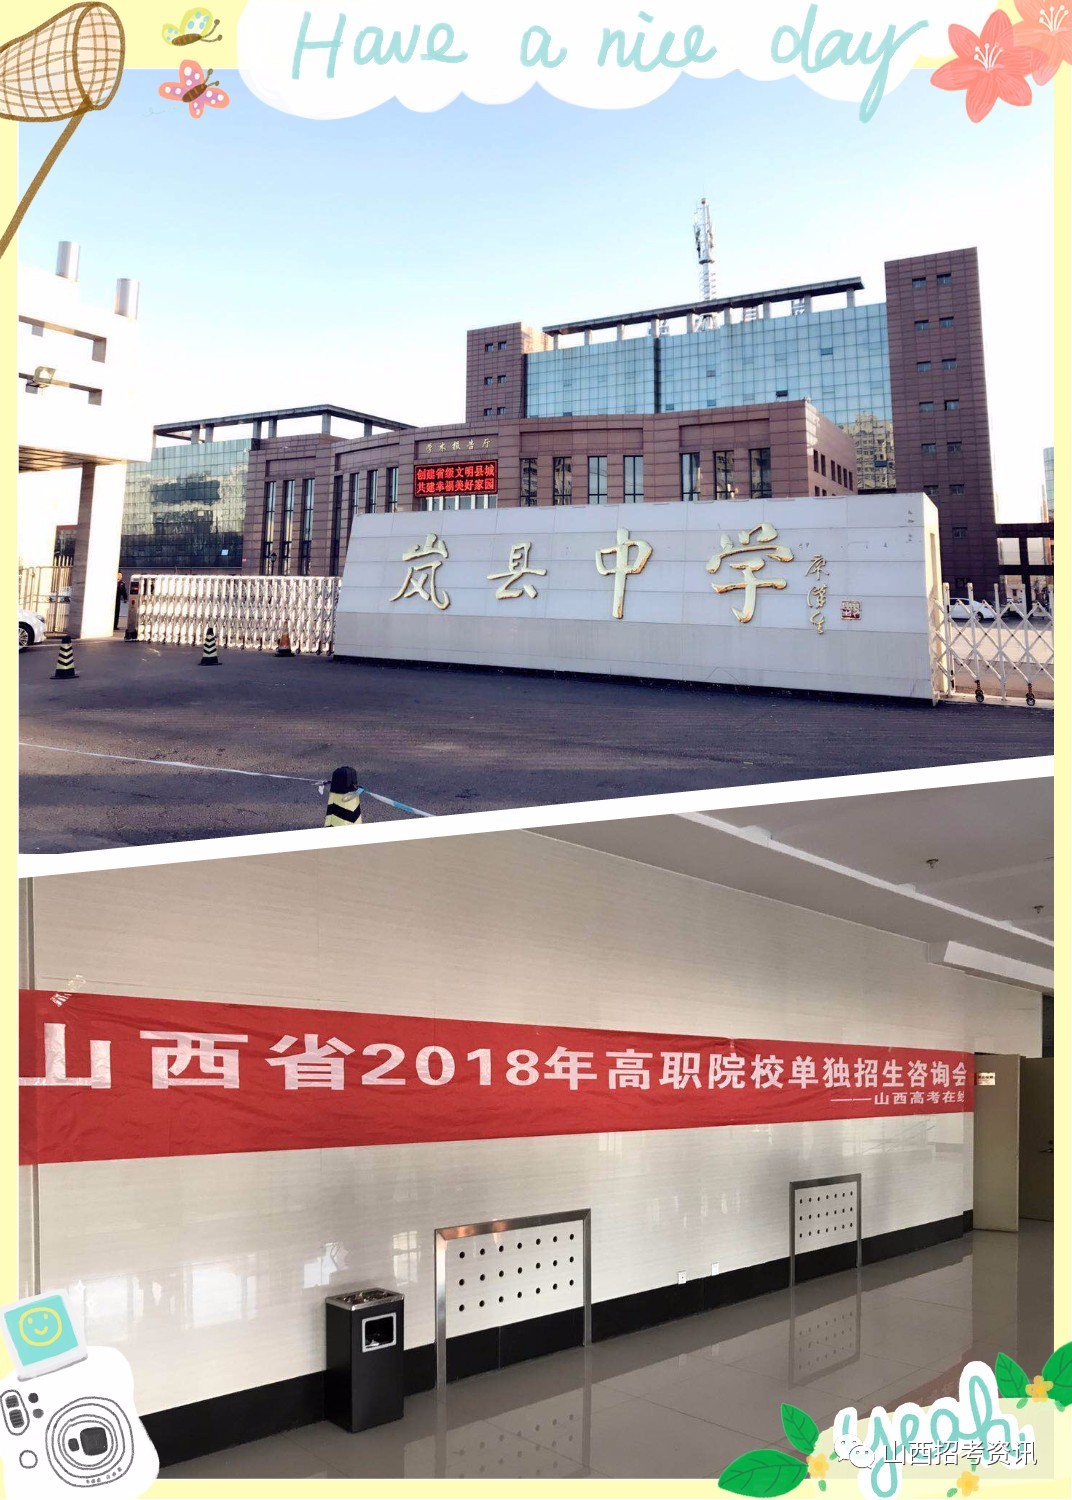 11月21日下午:岚县中学招生专业,计划,就业的合作企业与各院校老师